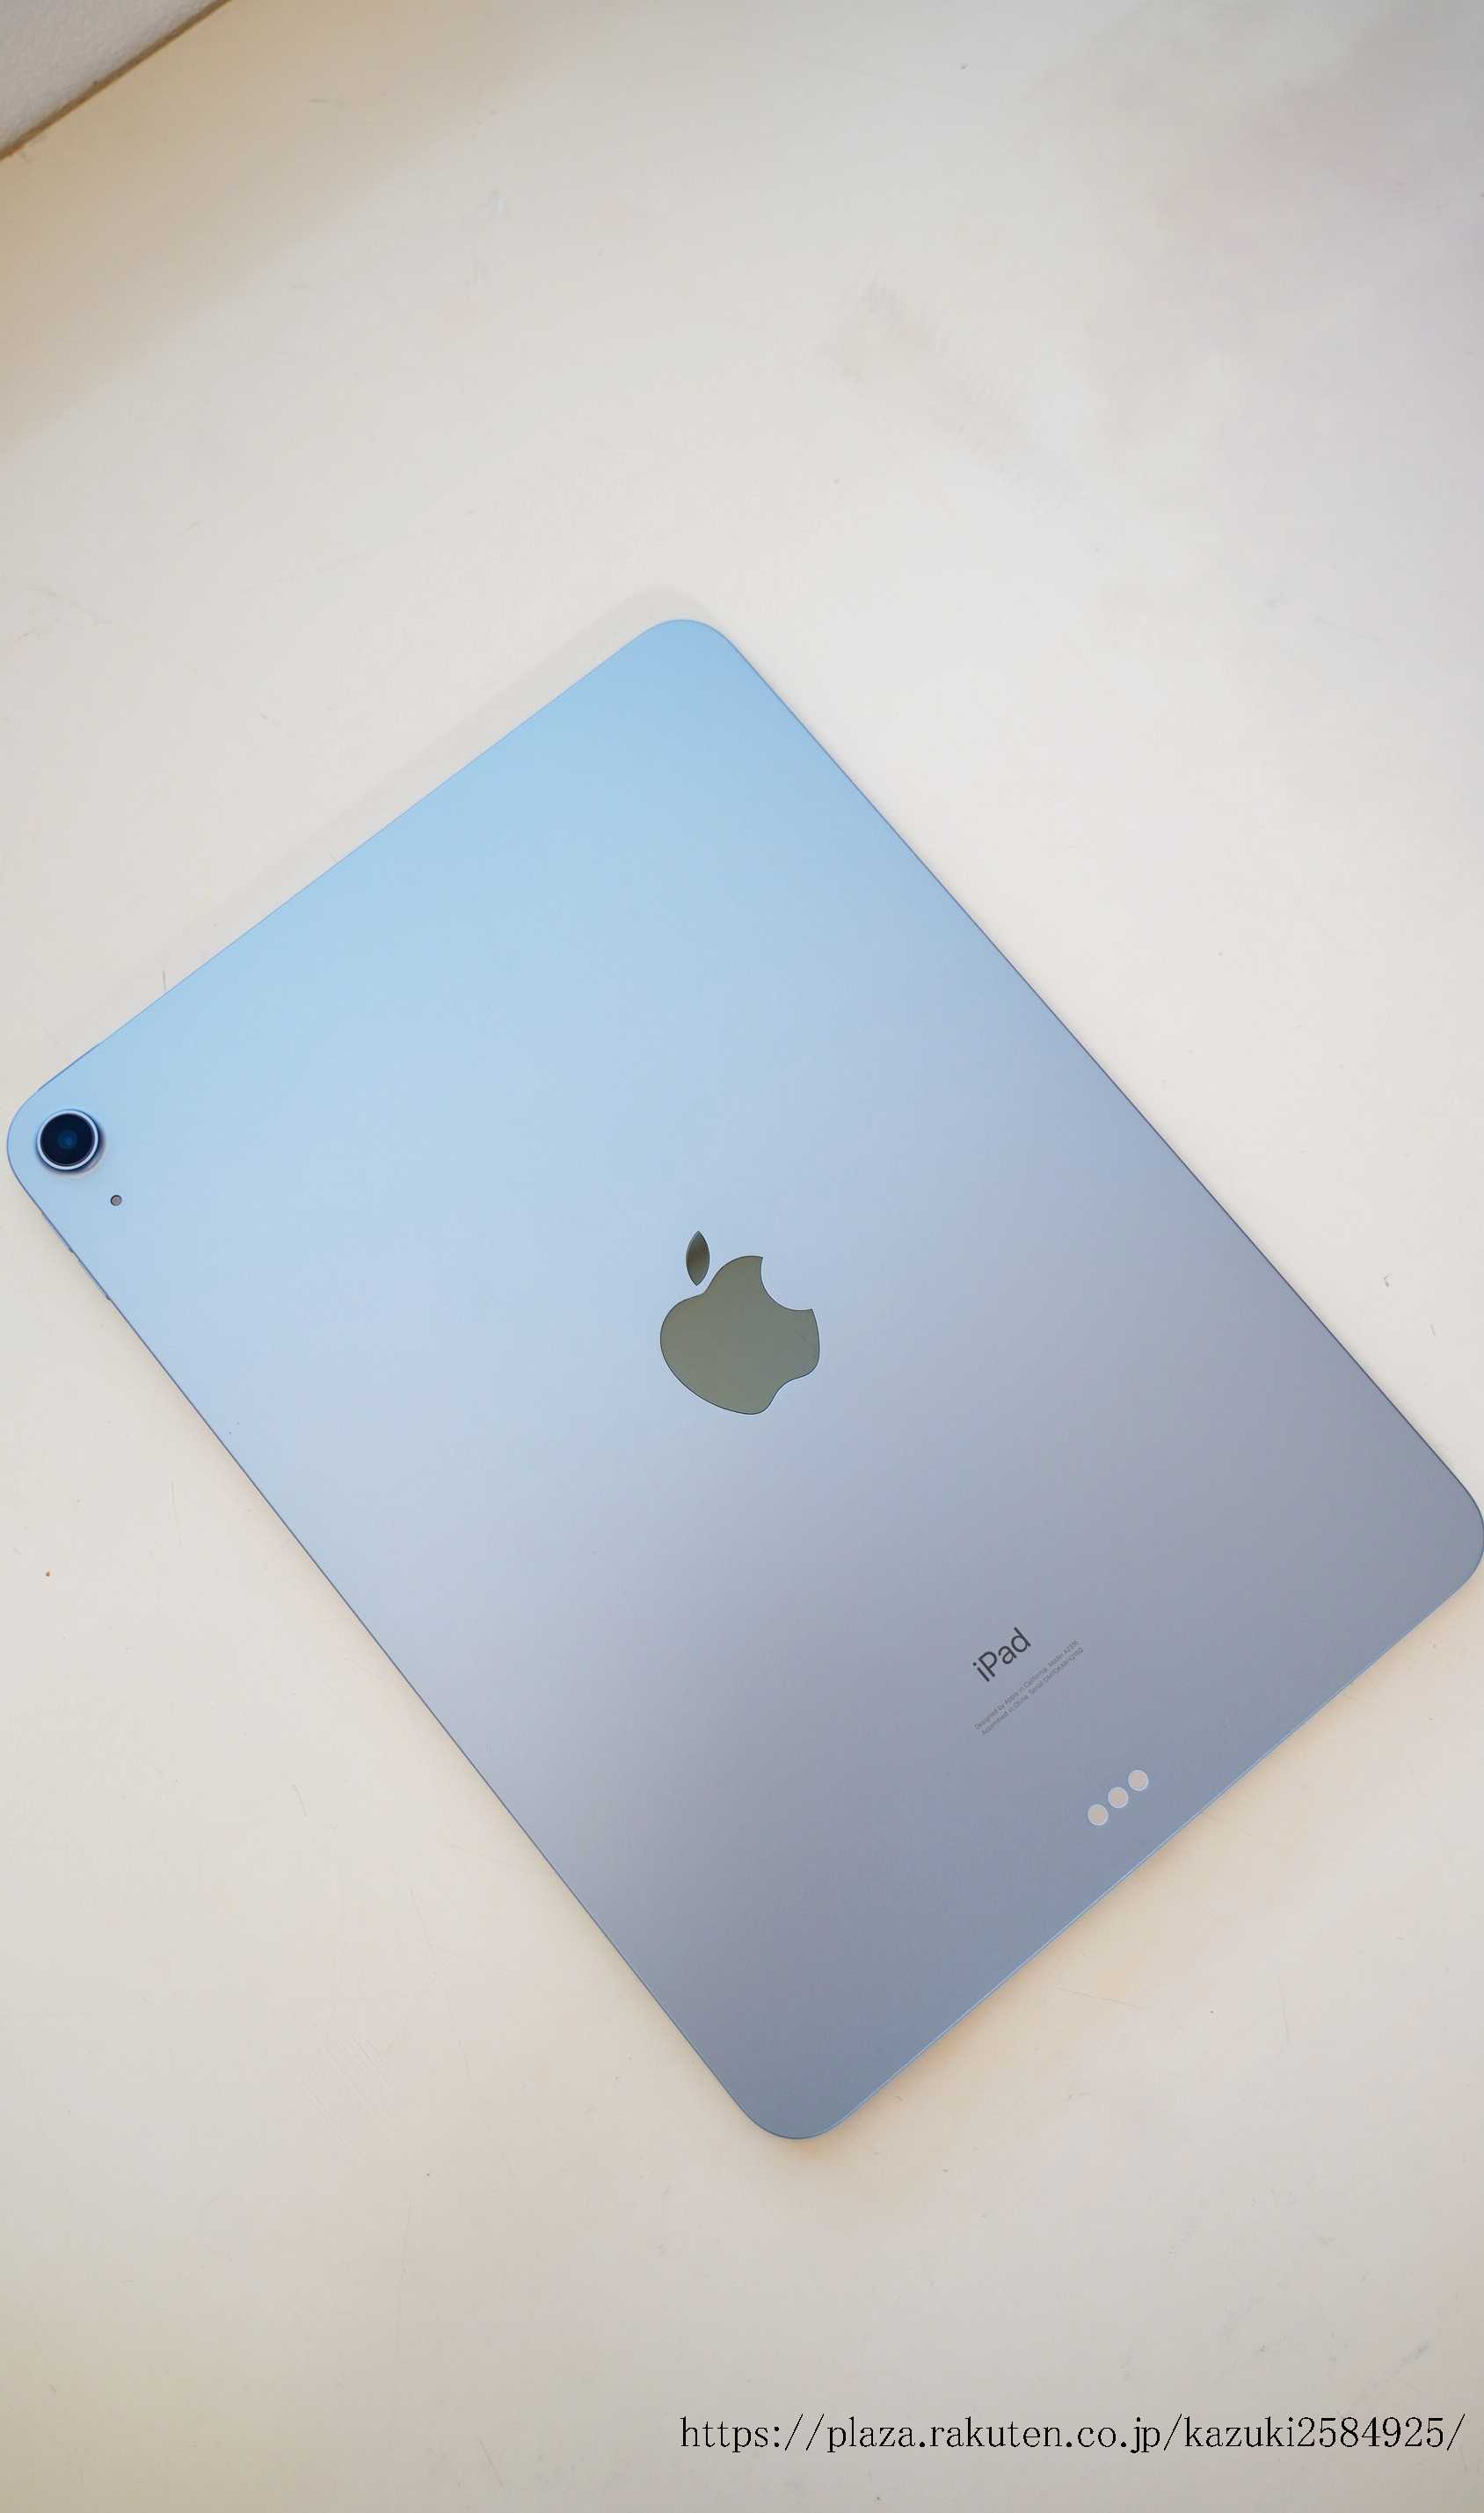 爆売り らずん様専用 iPad Air 第4世代 WiFiモデル 64GB スカイブルー